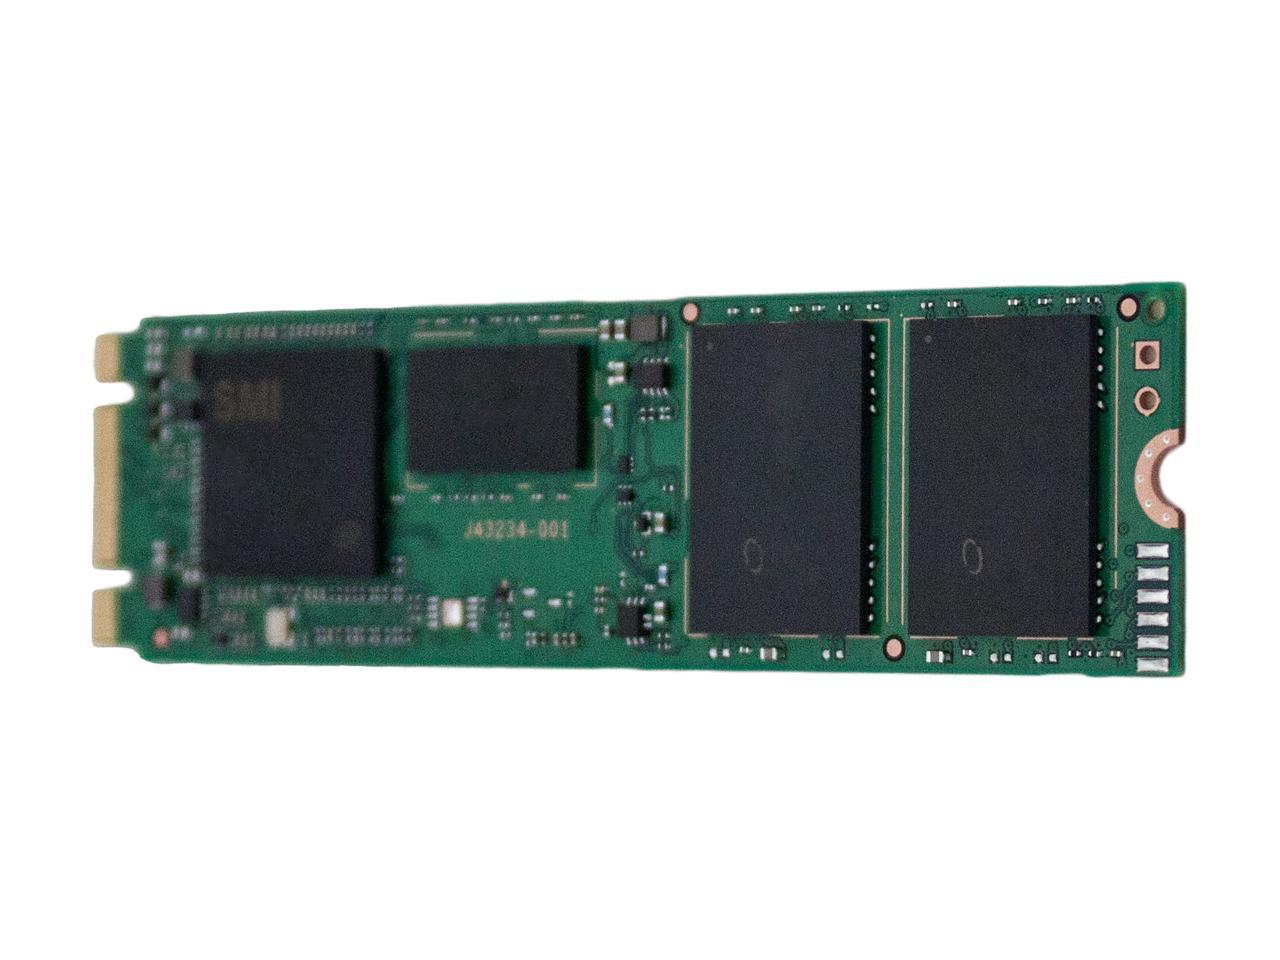 Intel 545s M.2 2280 512GB SATA III 64-Layer 3D NAND TLC Internal Solid State Drive (SSD) SSDSCKKW512G8X1